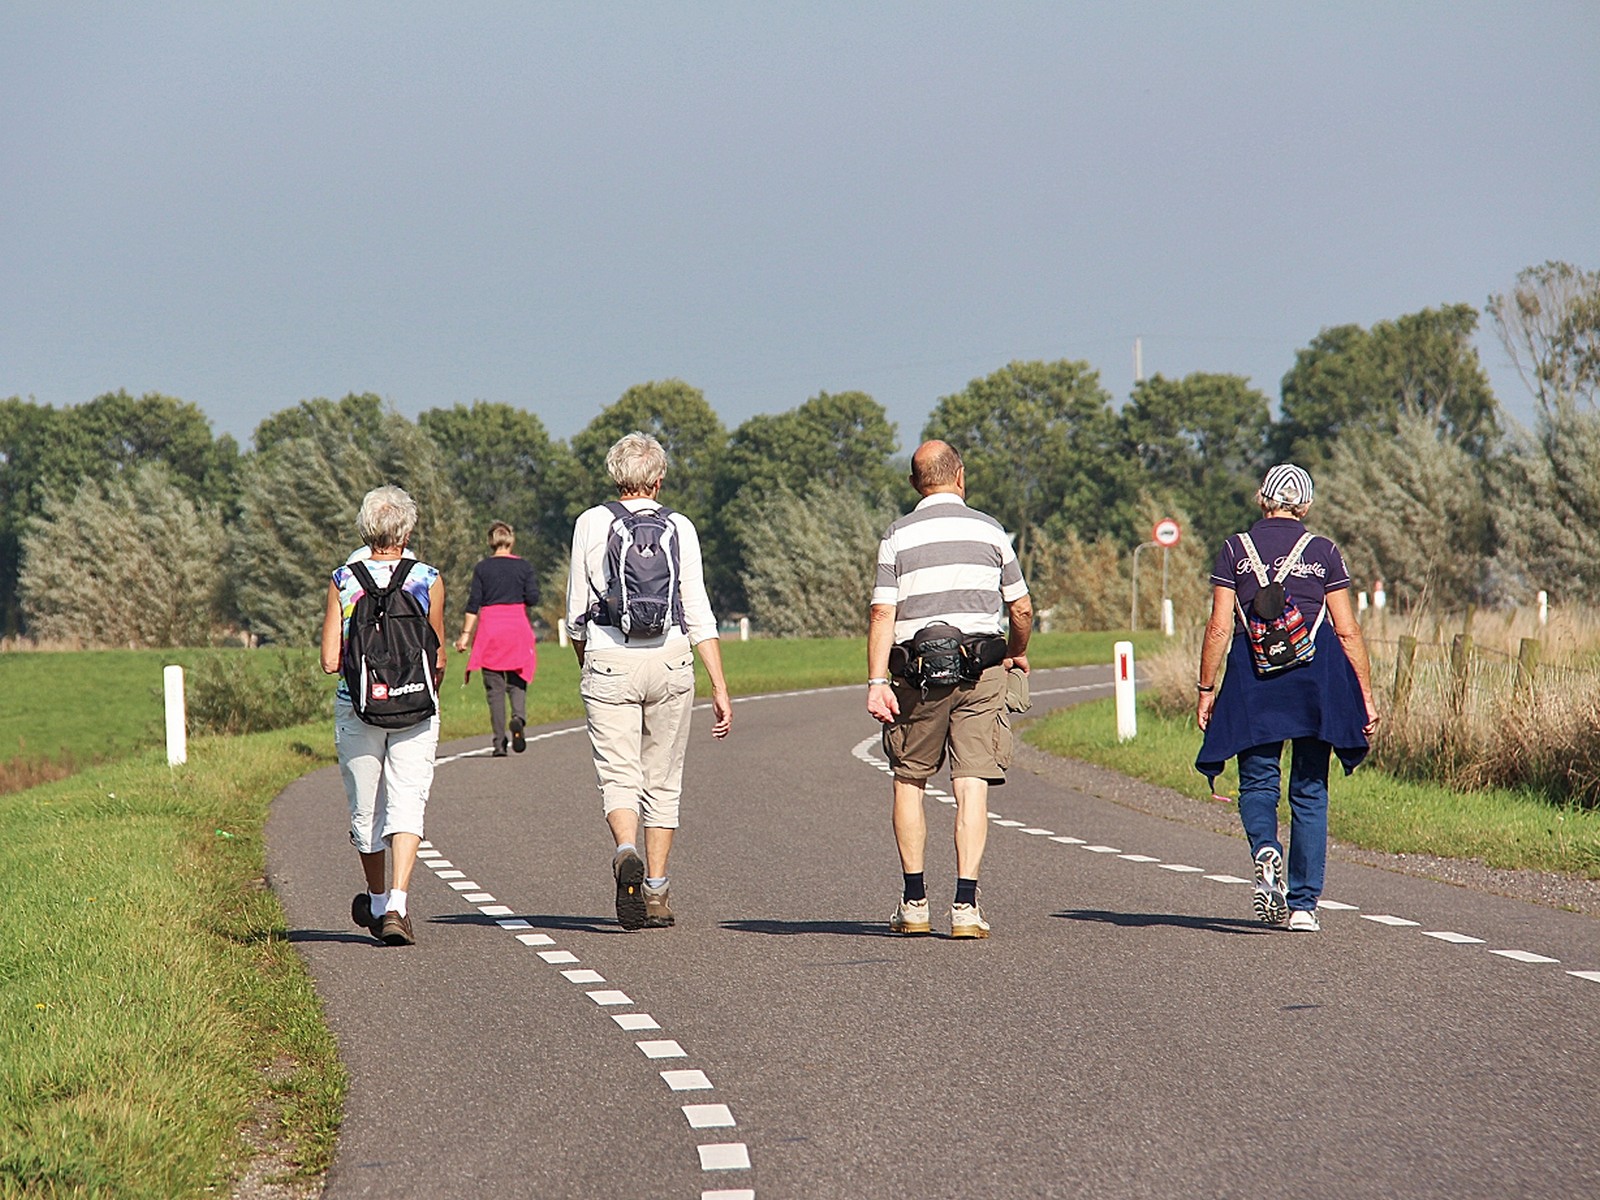 Wandelen met mensen uit andere delen van de gemeente Kampen